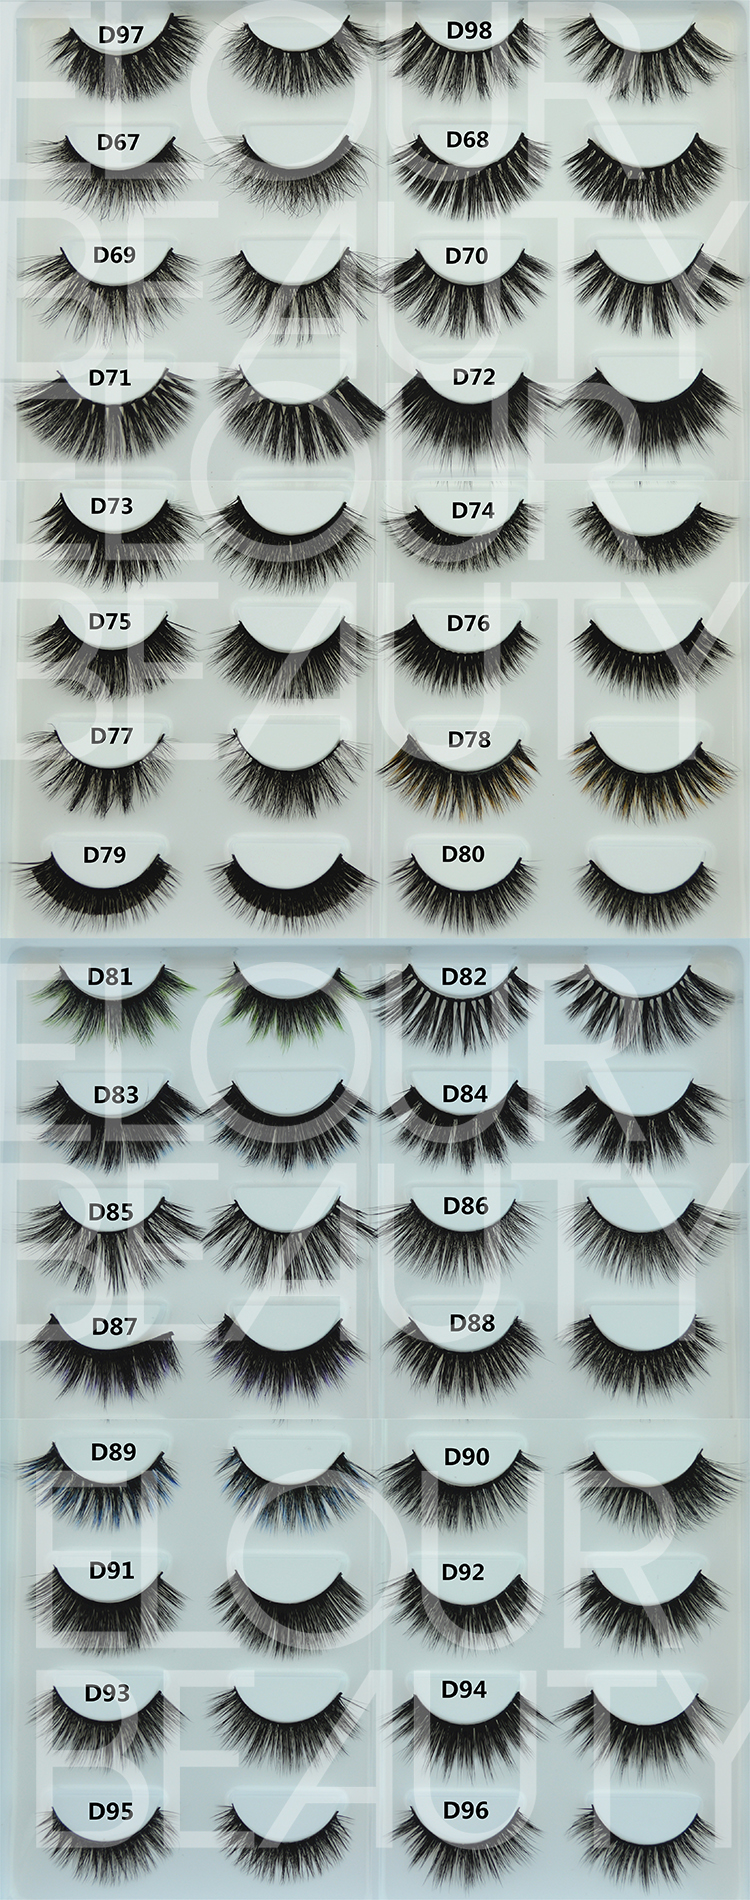 different 3d faux mink lashes wholesale.jpg